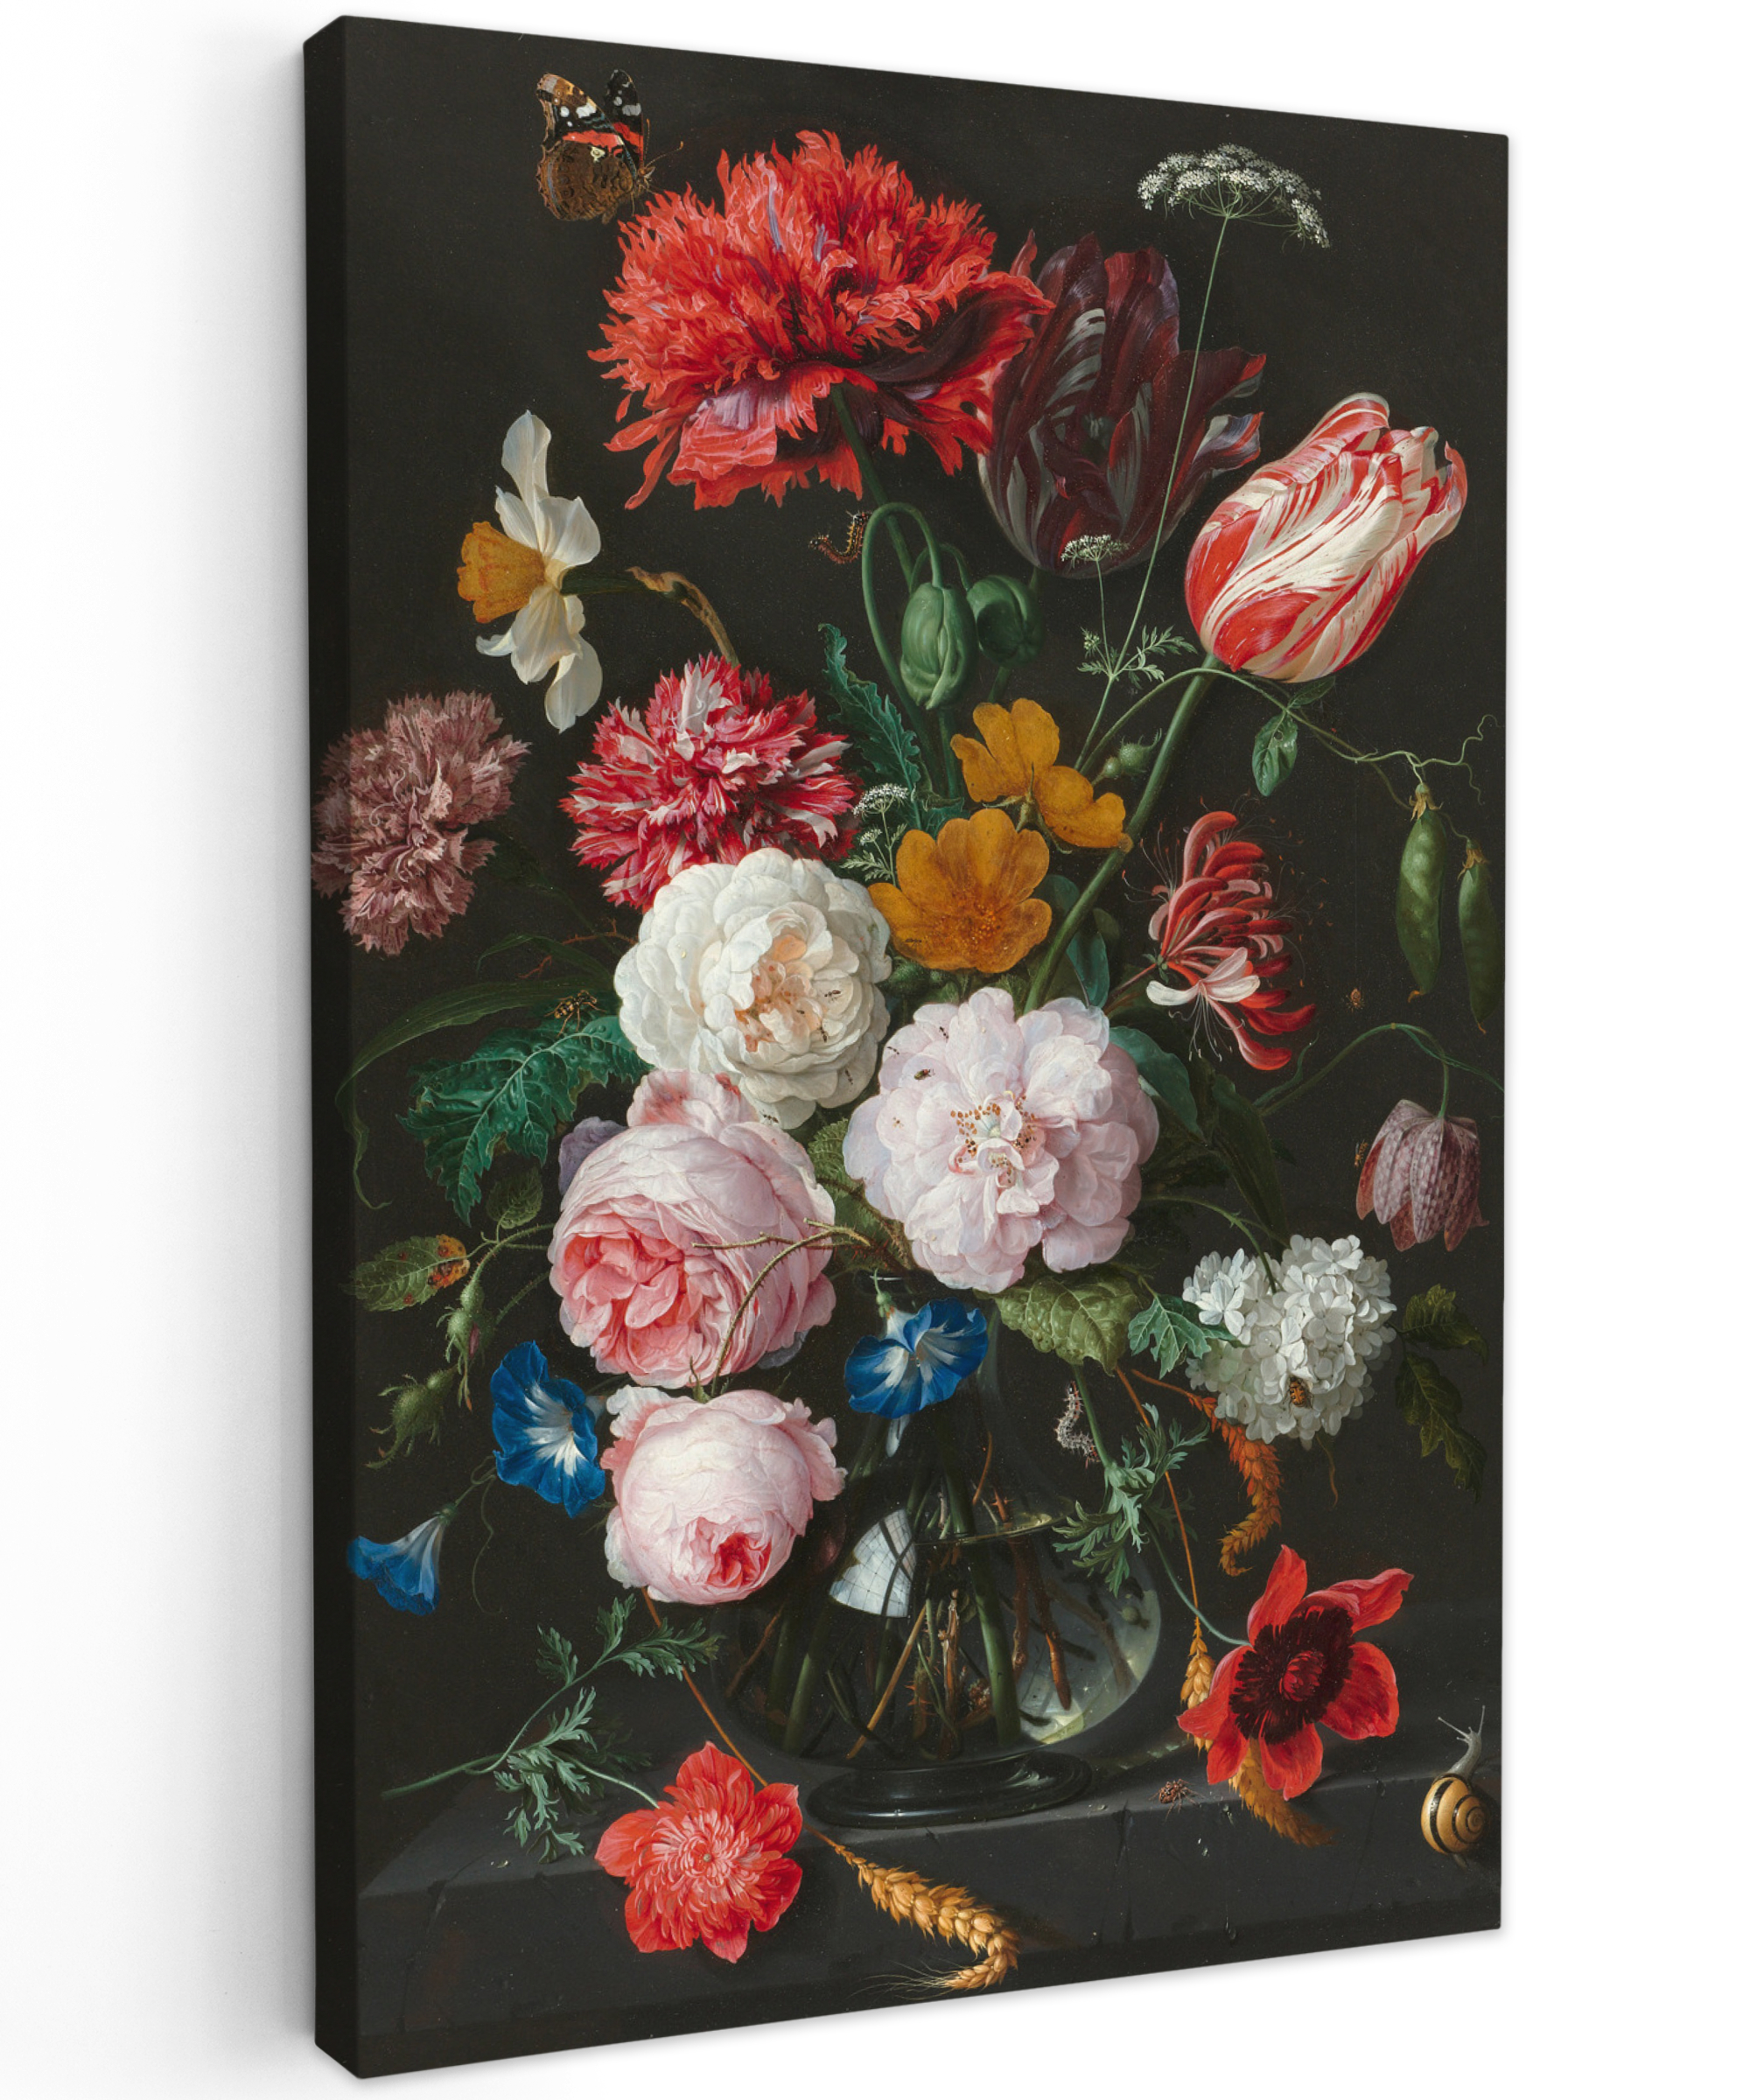 Tableau sur toile - Nature morte avec des fleurs dans un vase en verre - Peinture de Jan Davidsz. de Heem